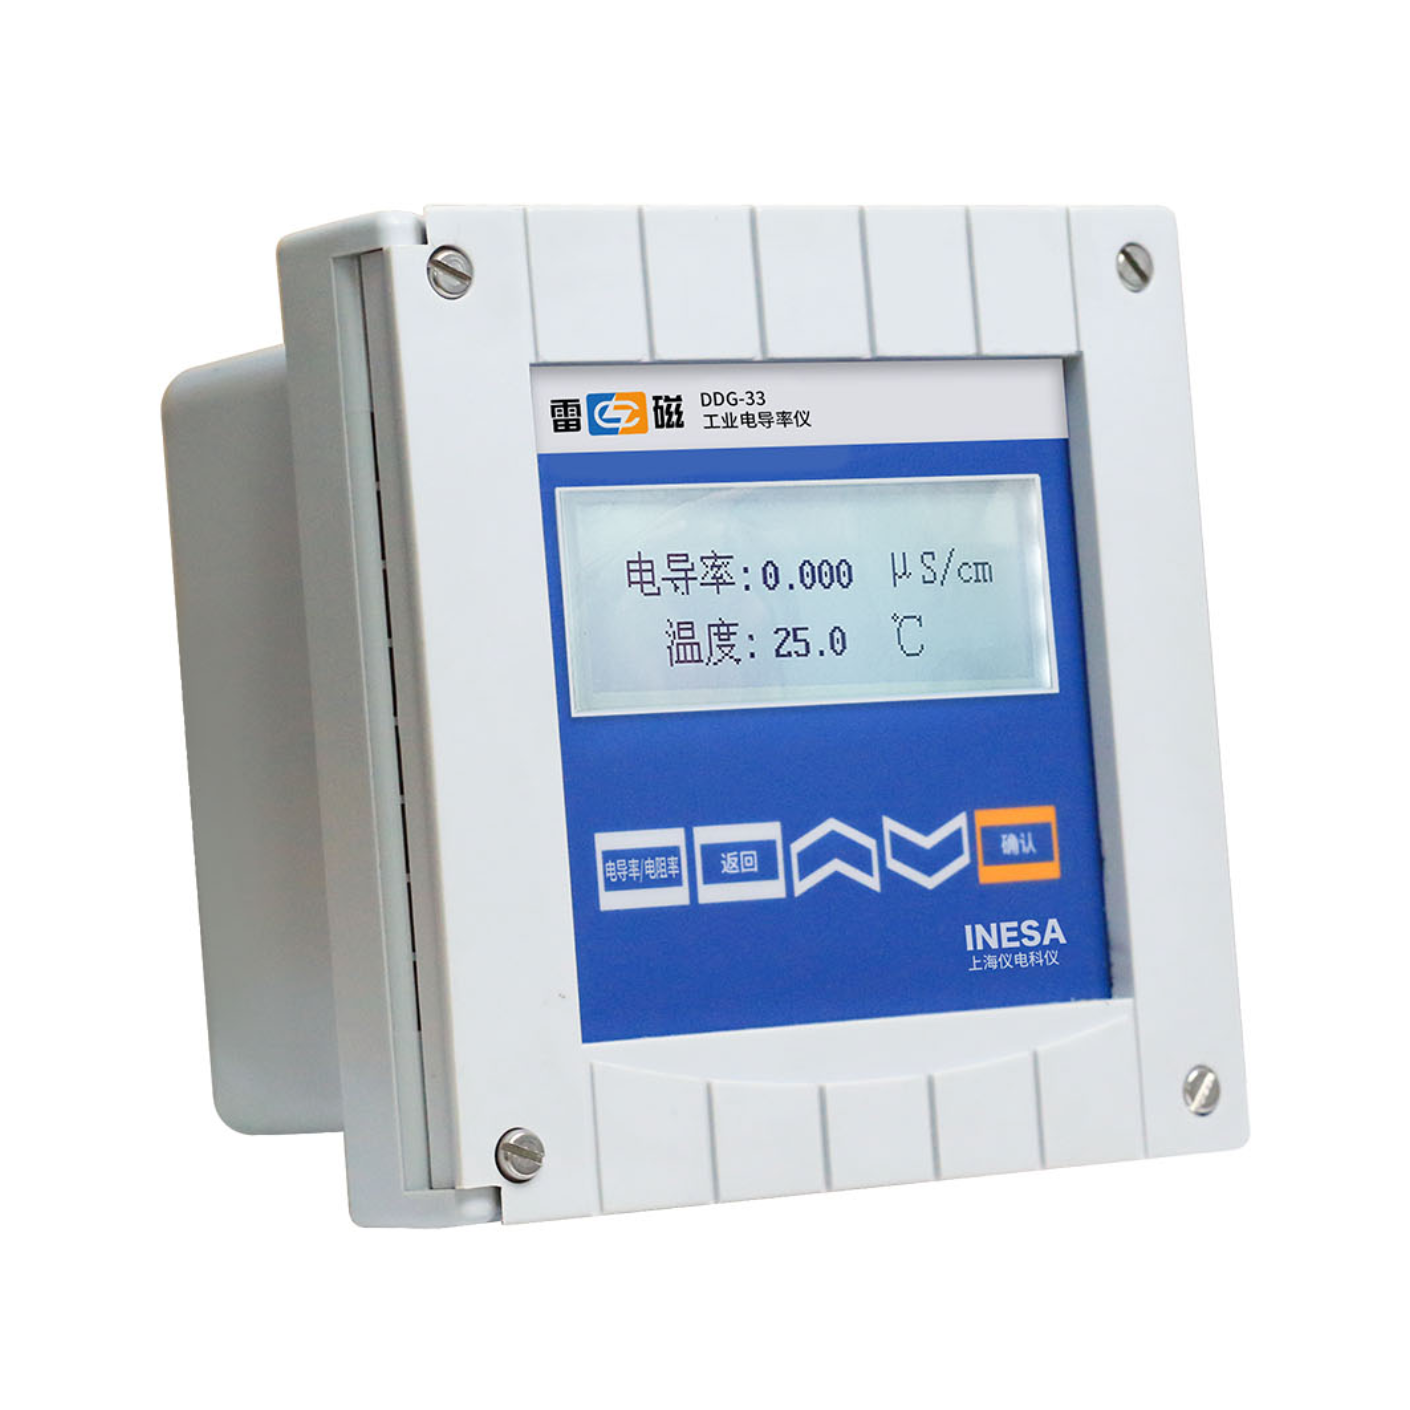 雷磁 DDG-33型 工业电导率仪上海仪电科学仪器股份有限公司